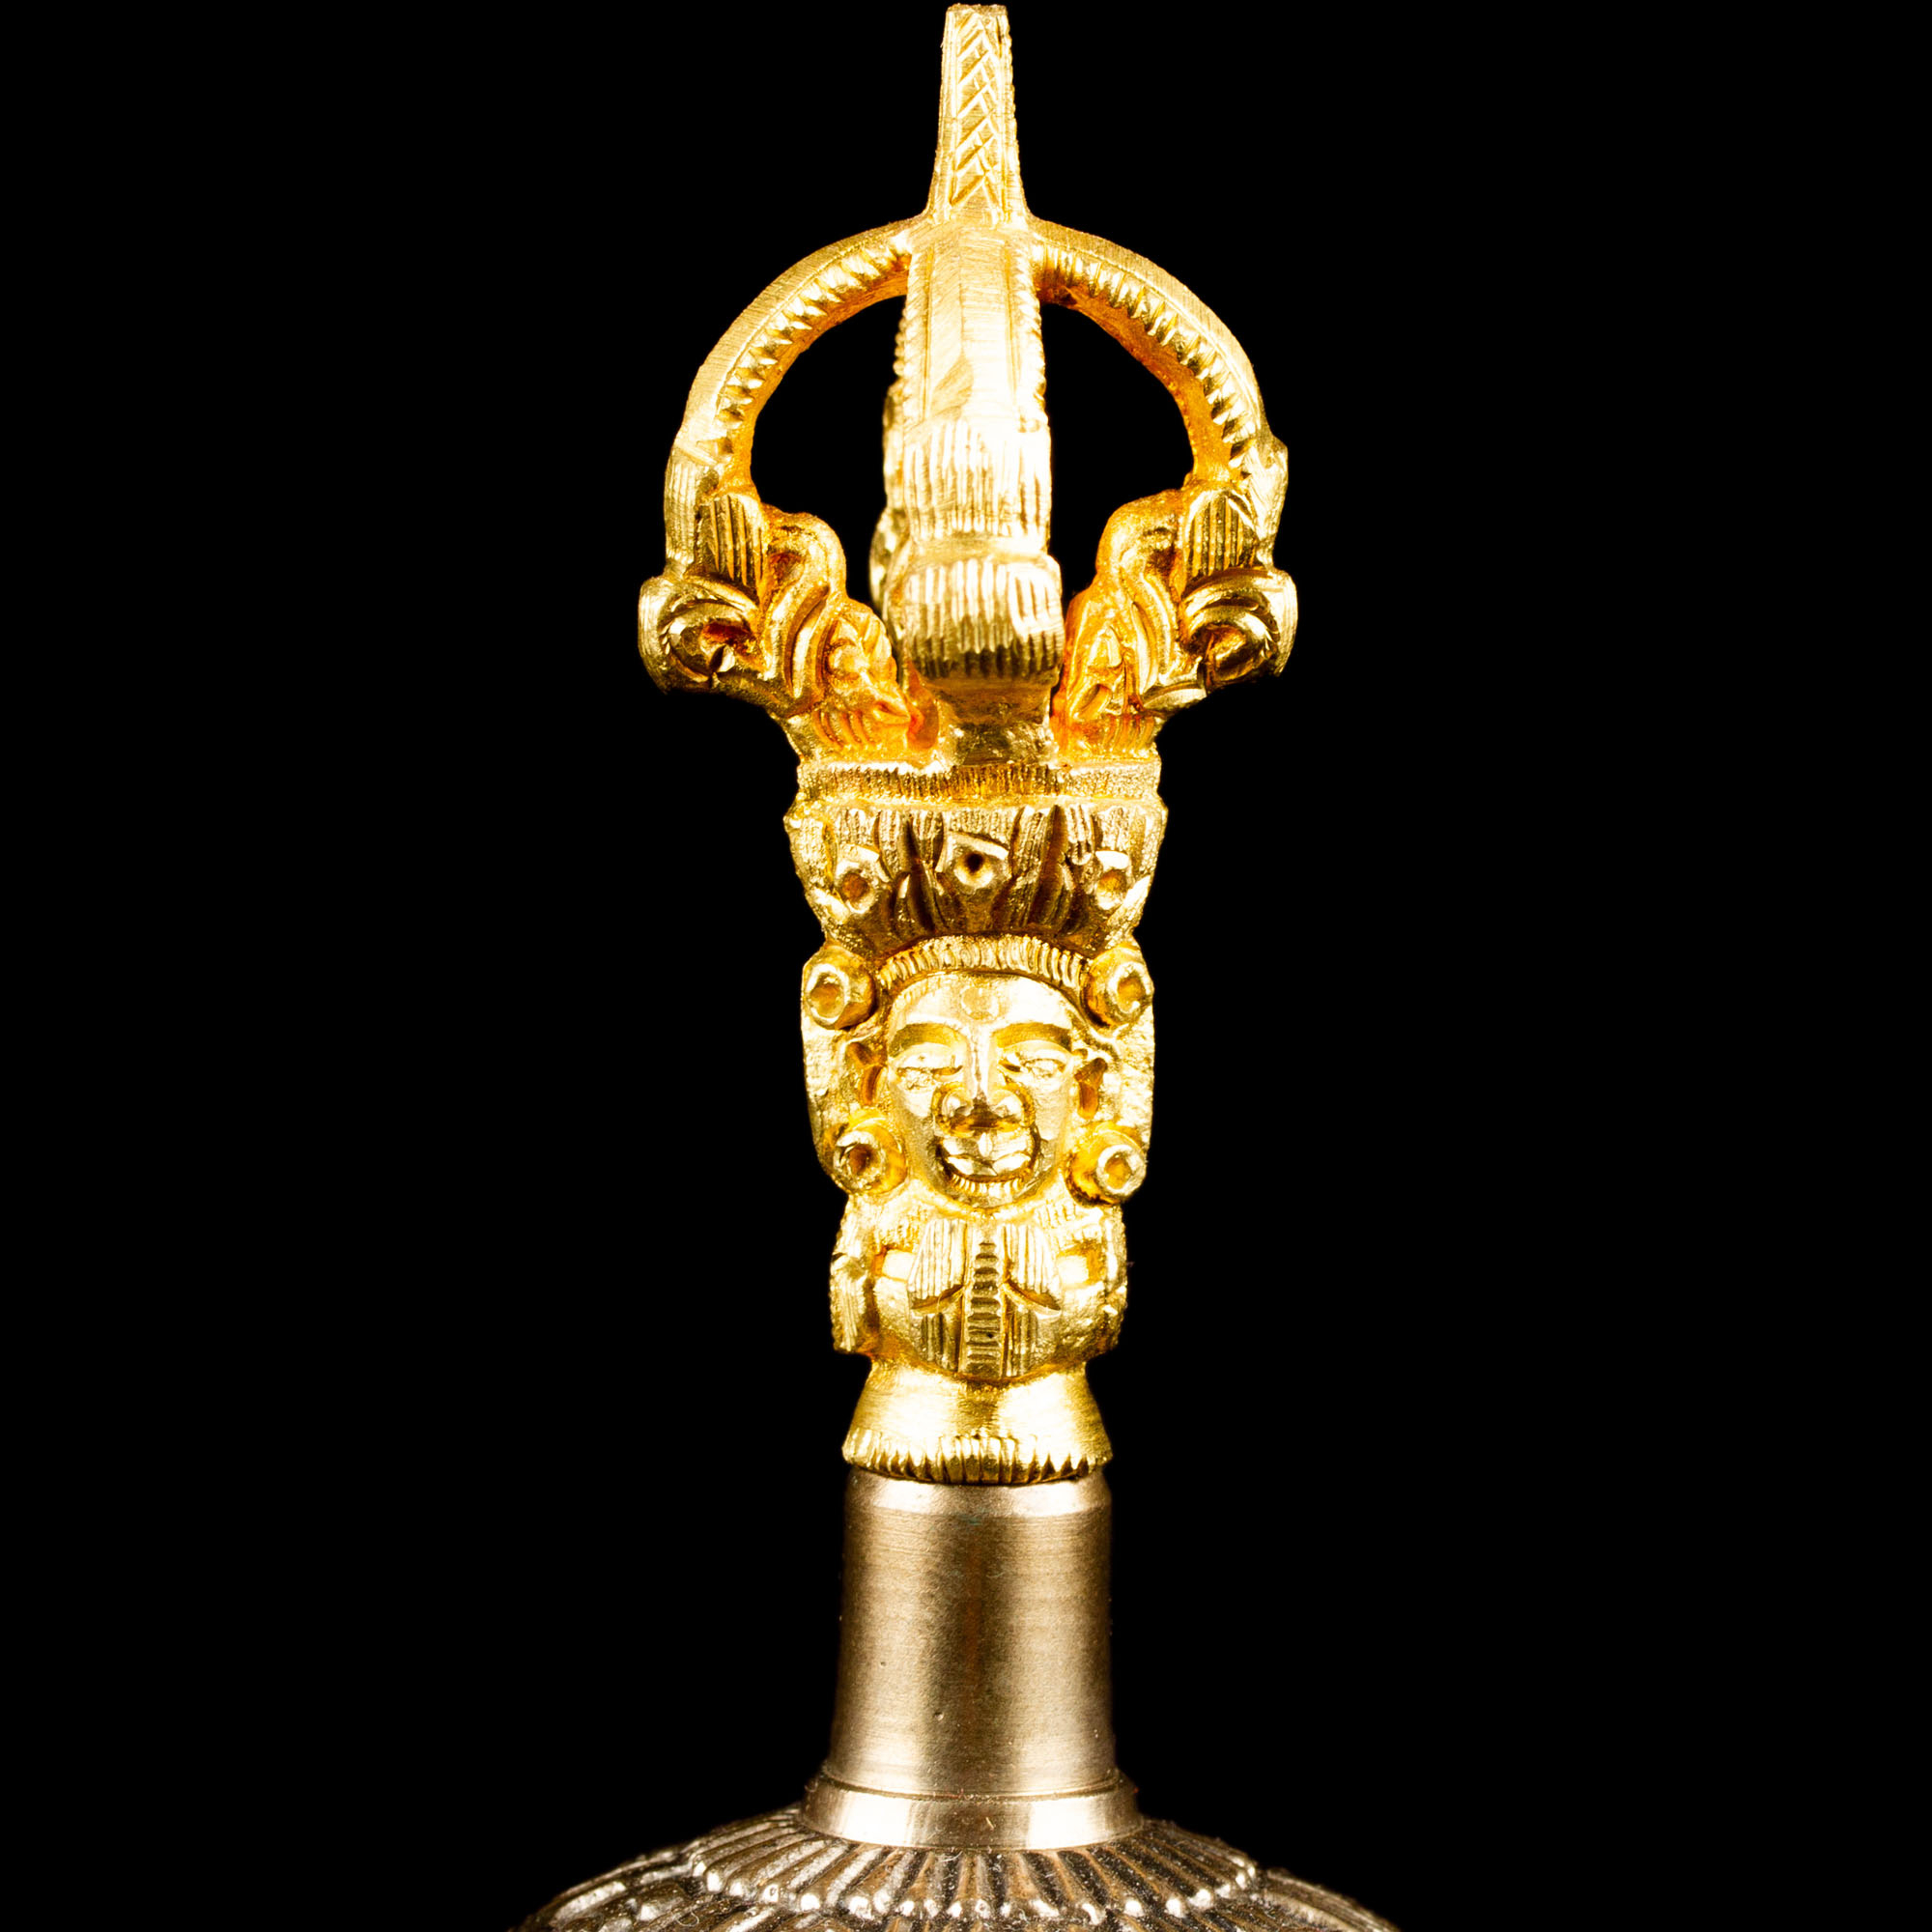 Колокольчик с ваджрой (серебристый), 12 см, Непал, хорошее качество, 12 см, золотой, серебро